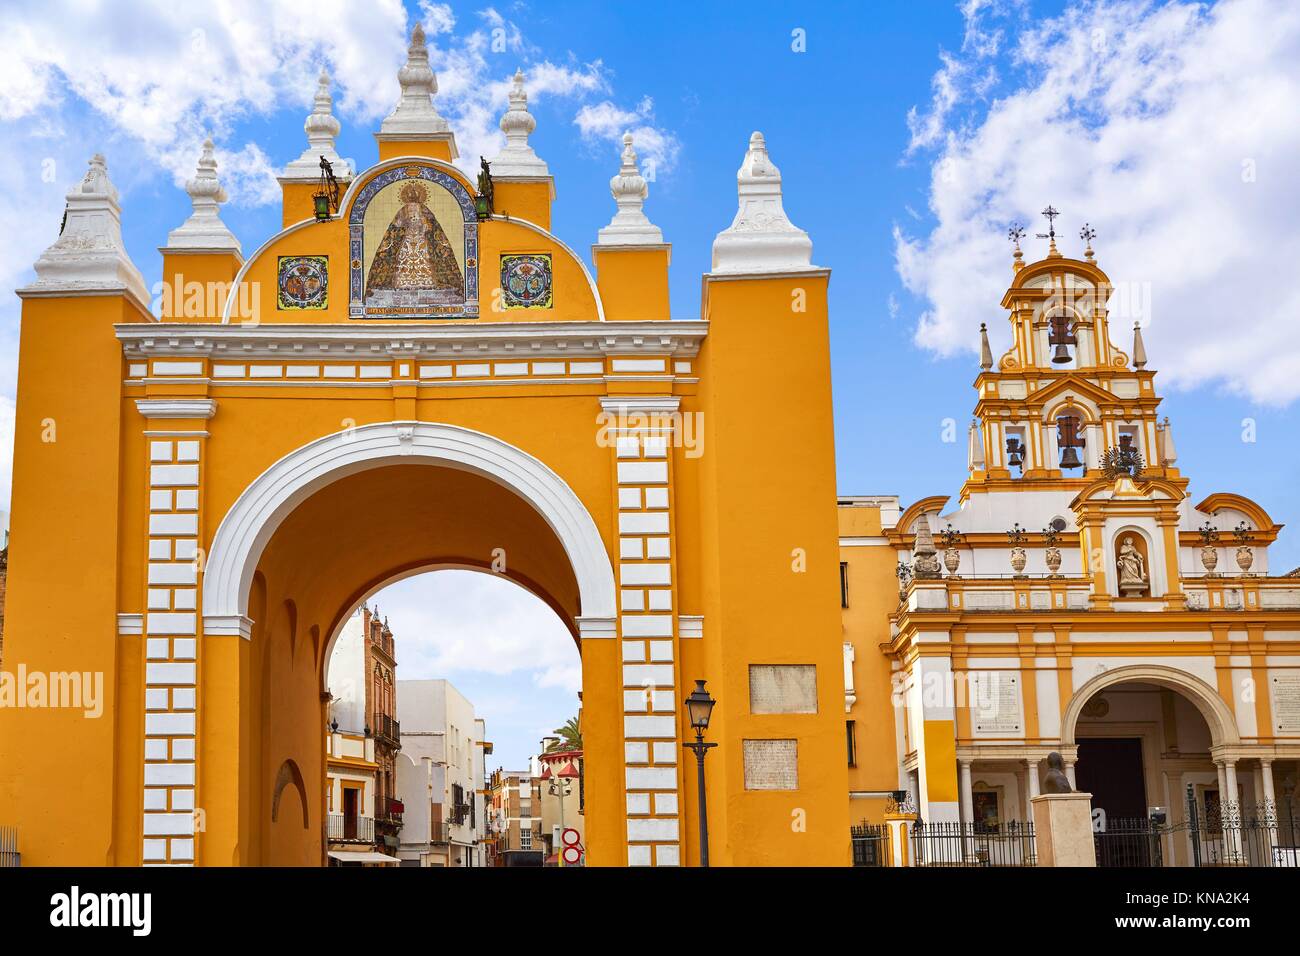 El arco de la puerta de la Macarena de Sevilla, España Fotografía de stock  - Alamy